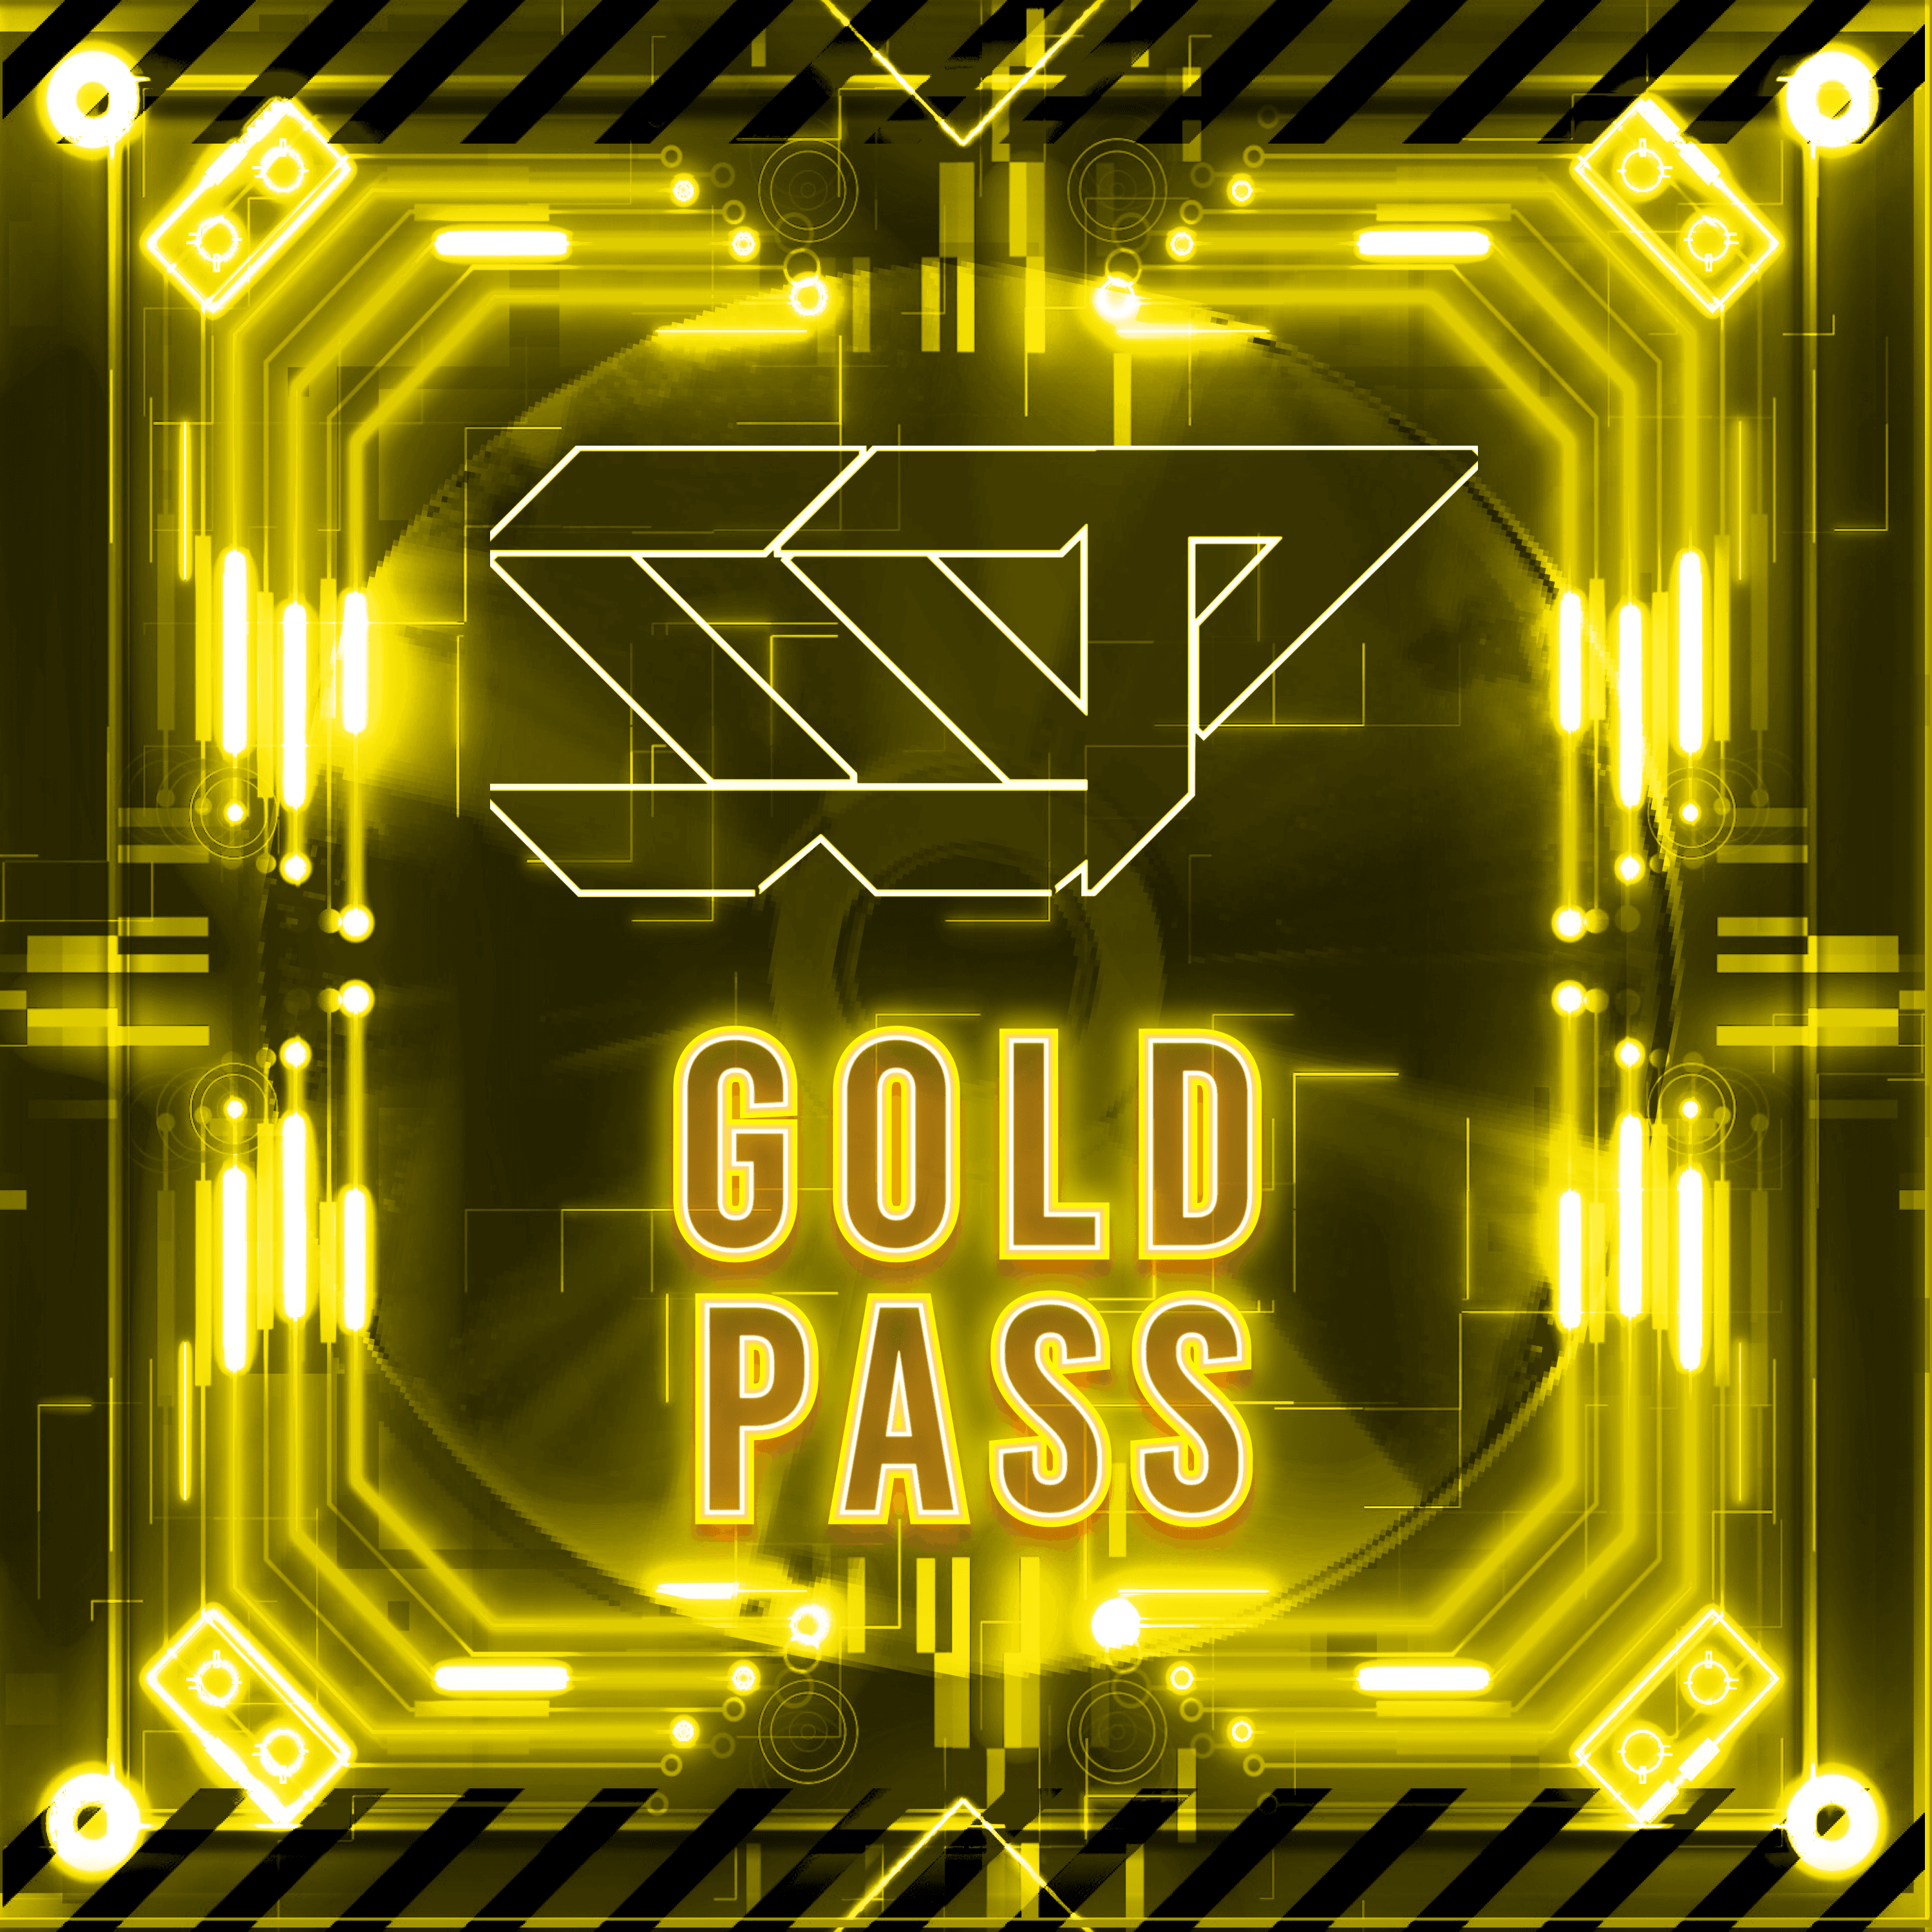 SSP Gold Pass Yellow